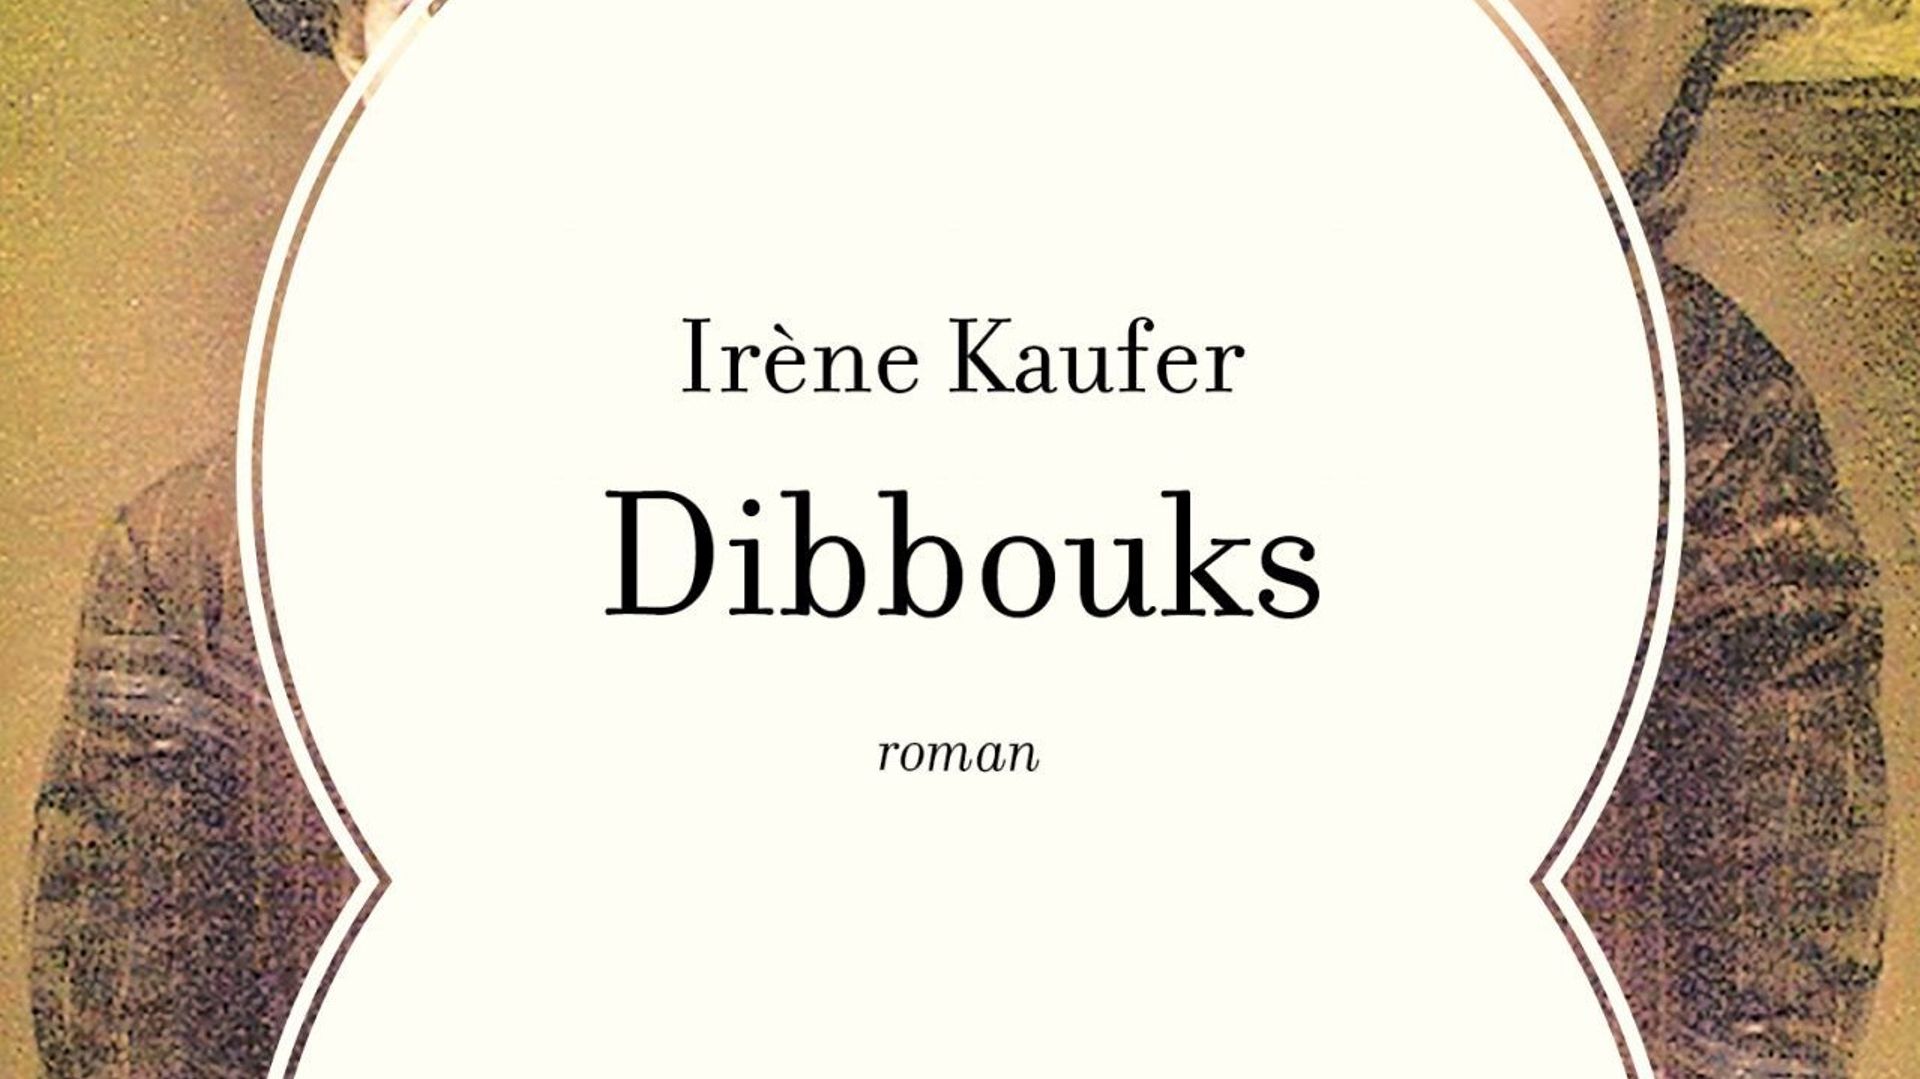 "Dibboucks" d'Irène Kaufer, une lecture en apnée